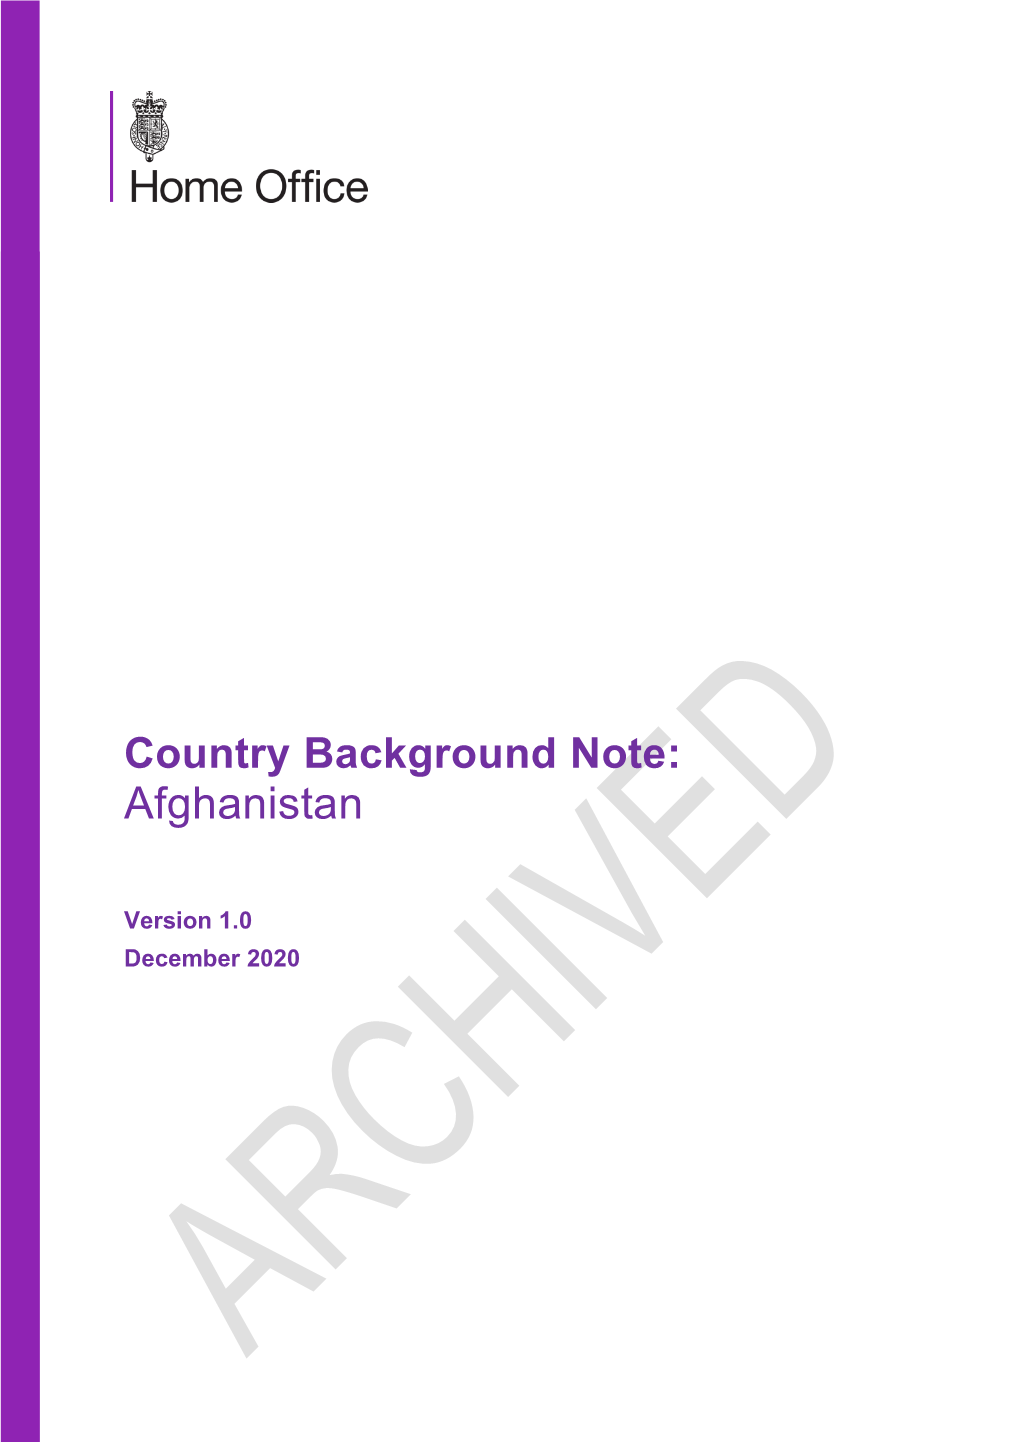 Afghanistan-Background Note-V1.0(December 2020)